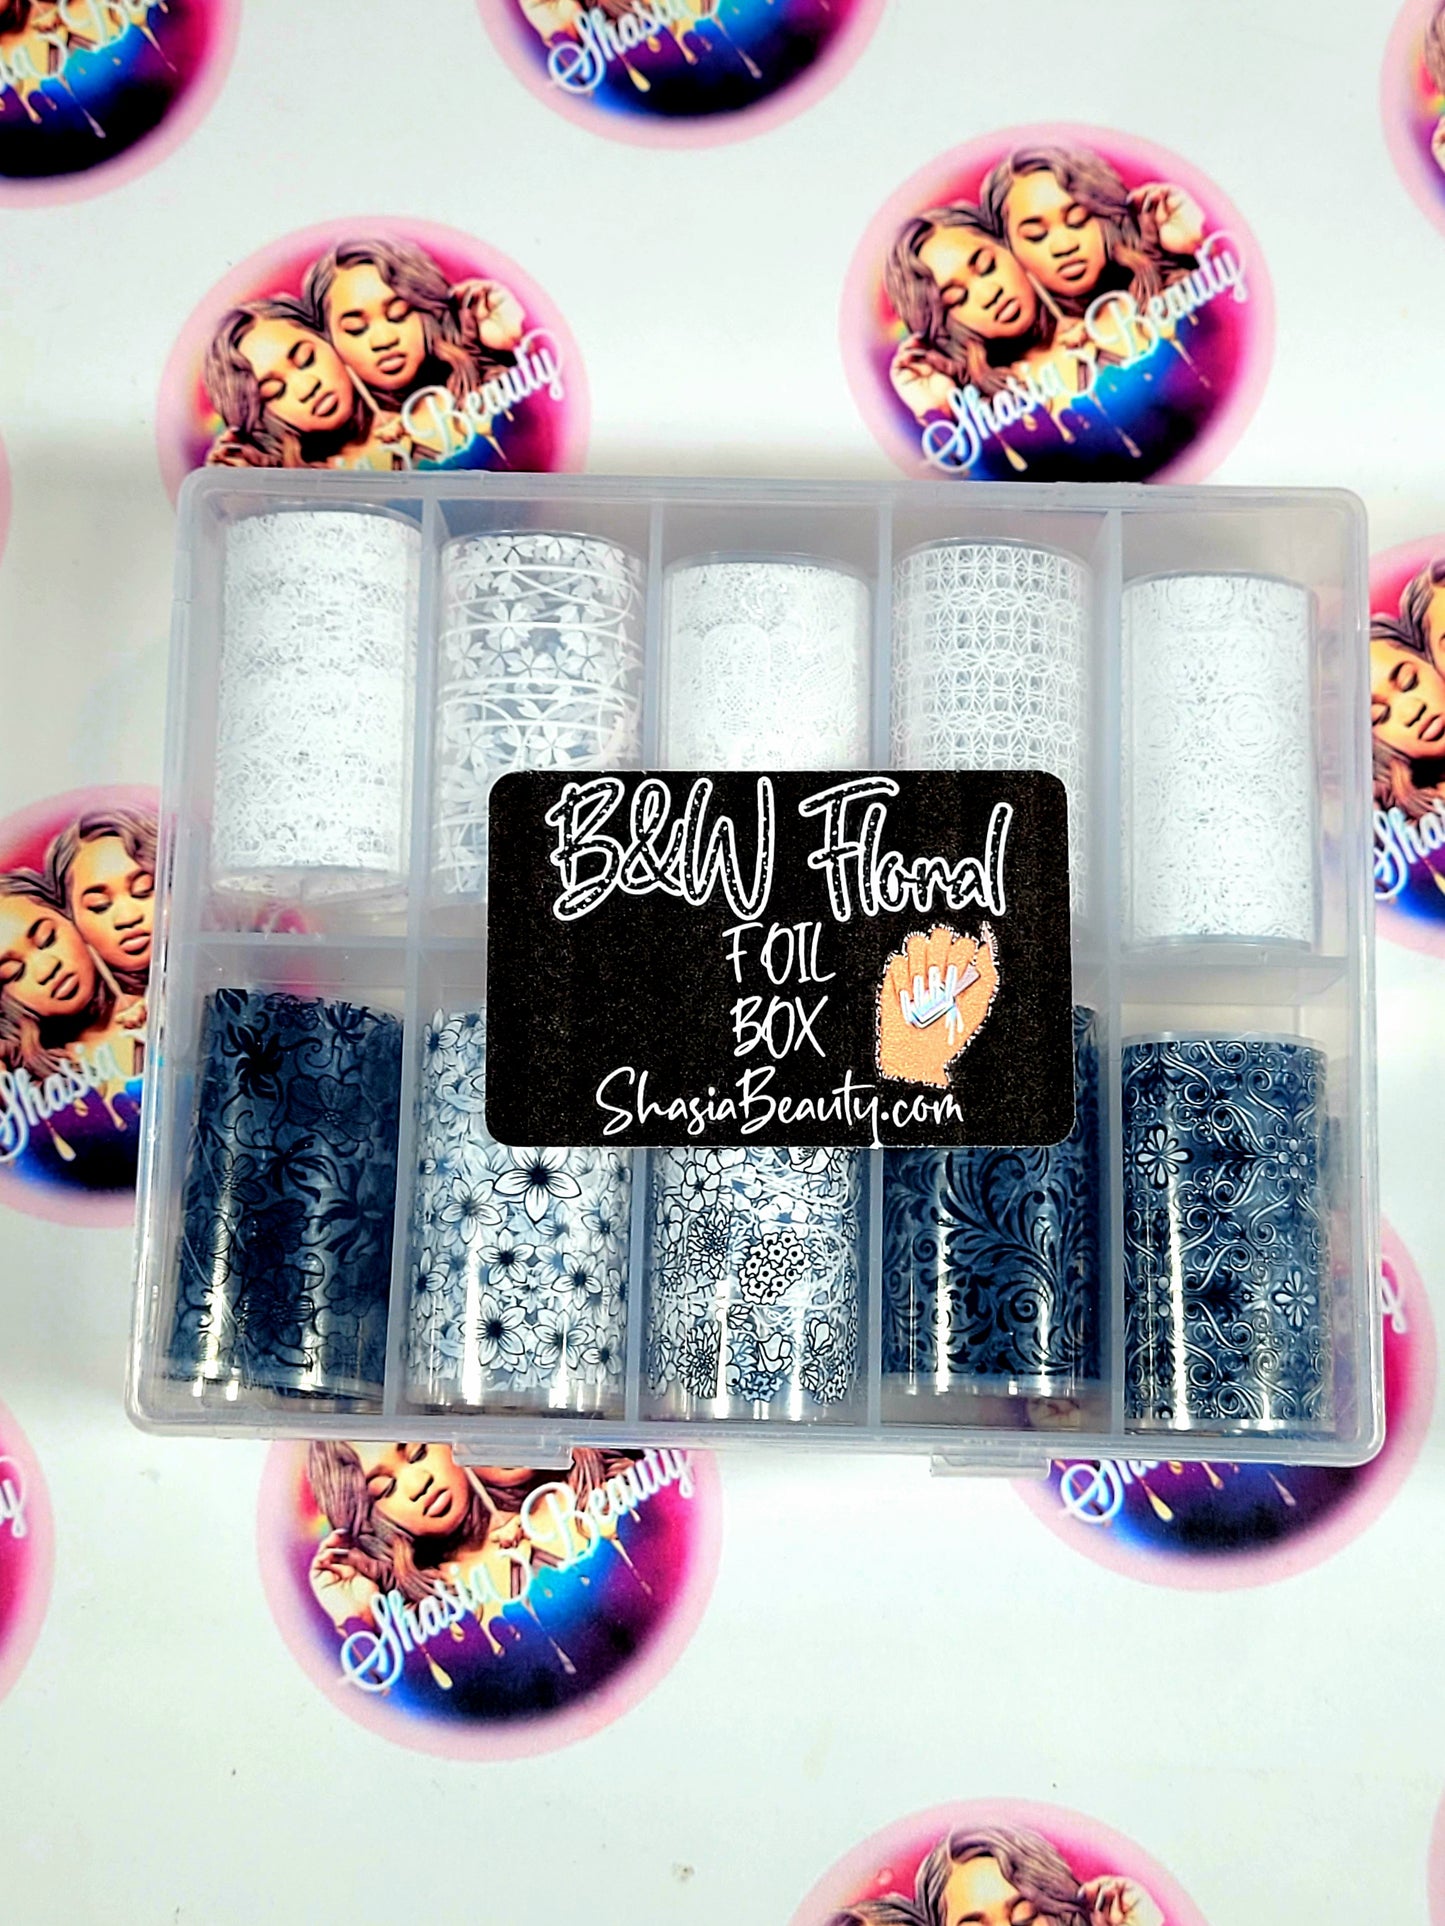 Black & White Floral Lace Foil Box